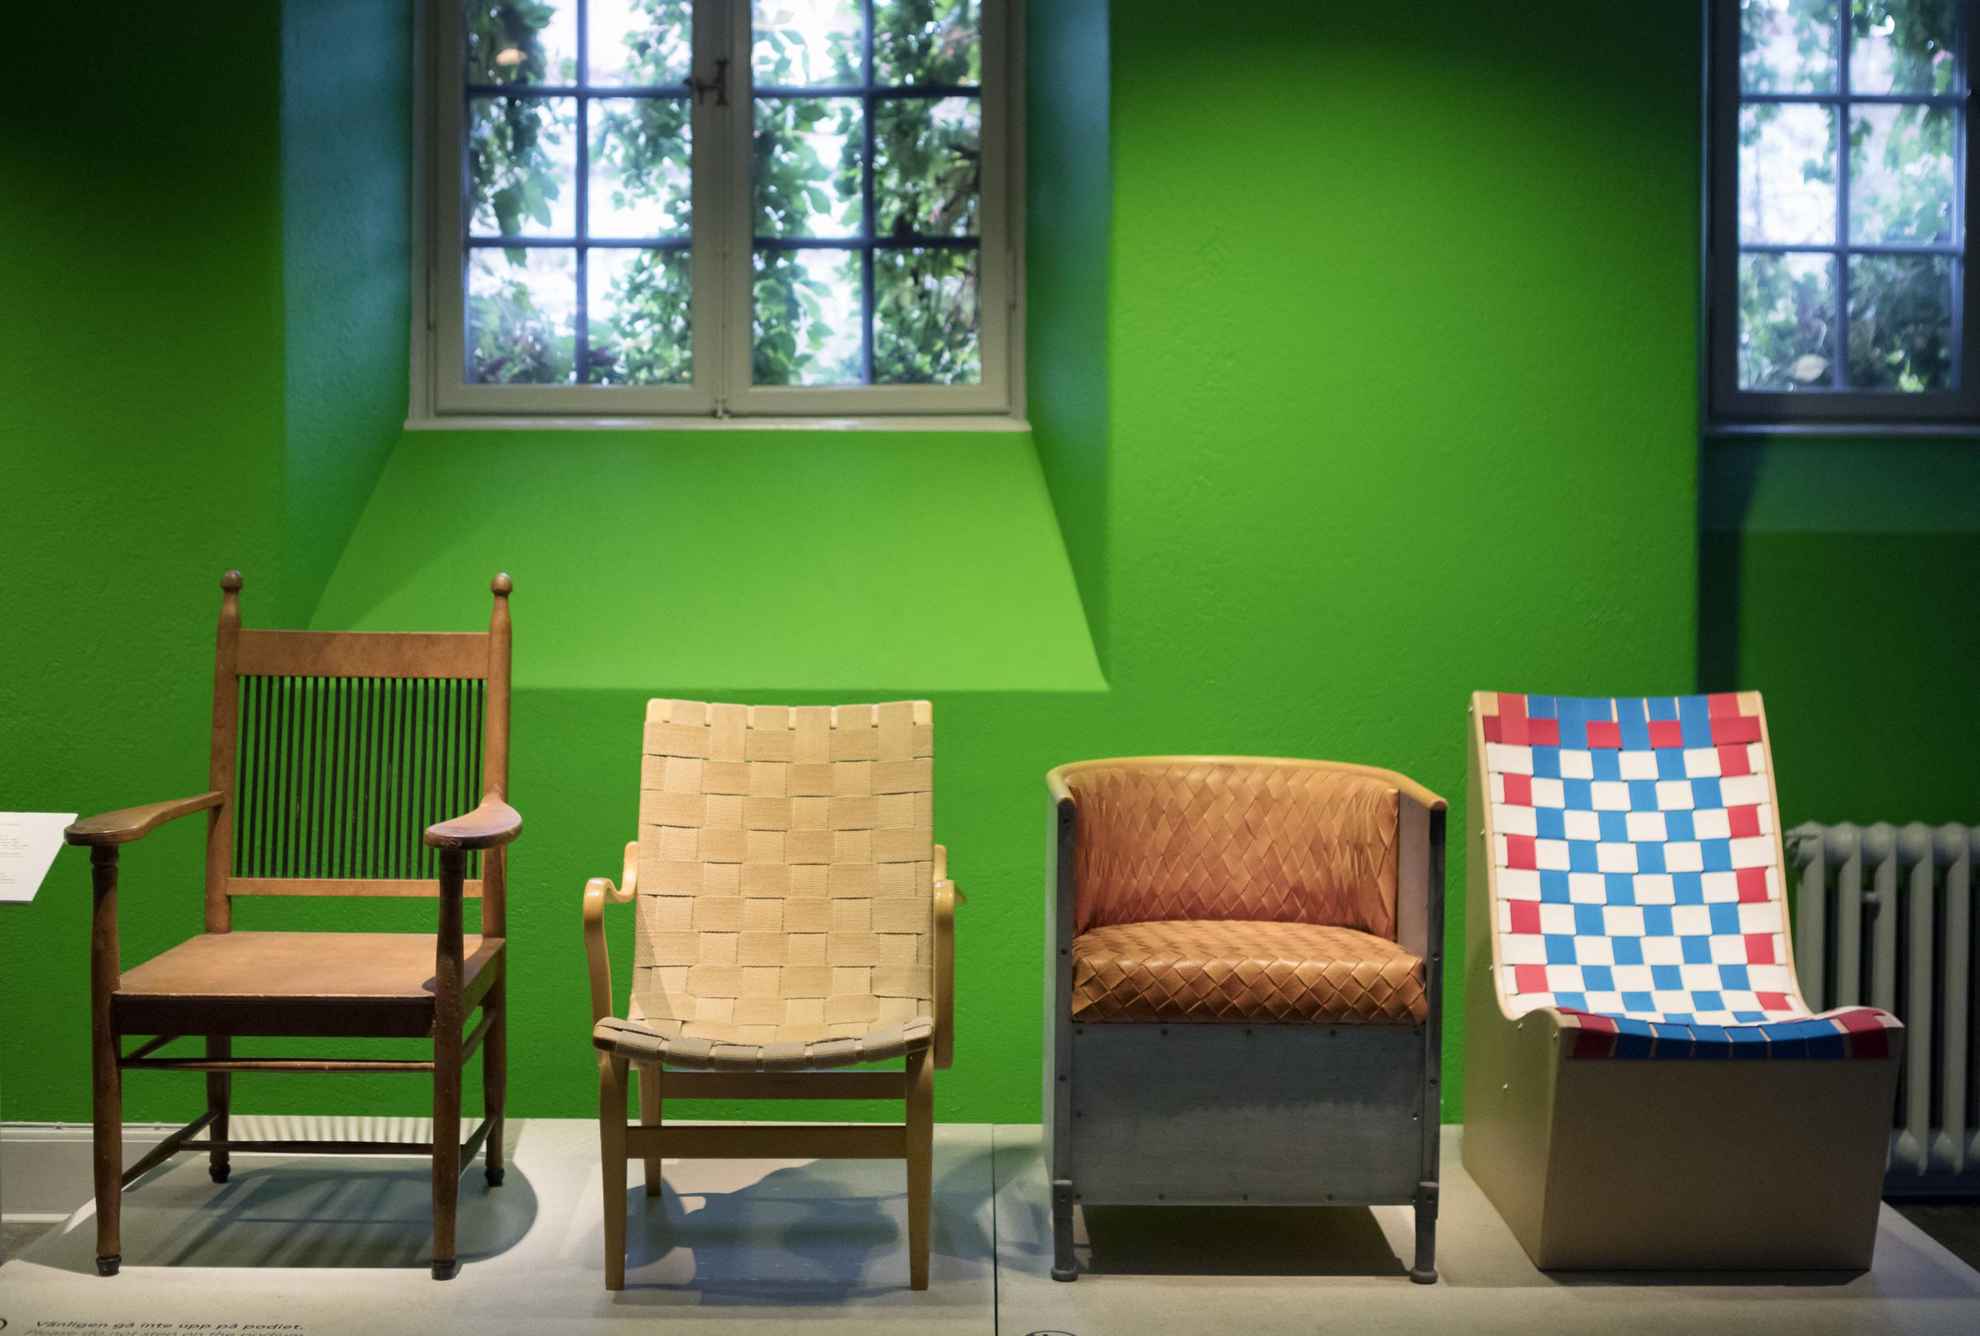 Une exposition présentant quatre chaises différentes dans un musée.